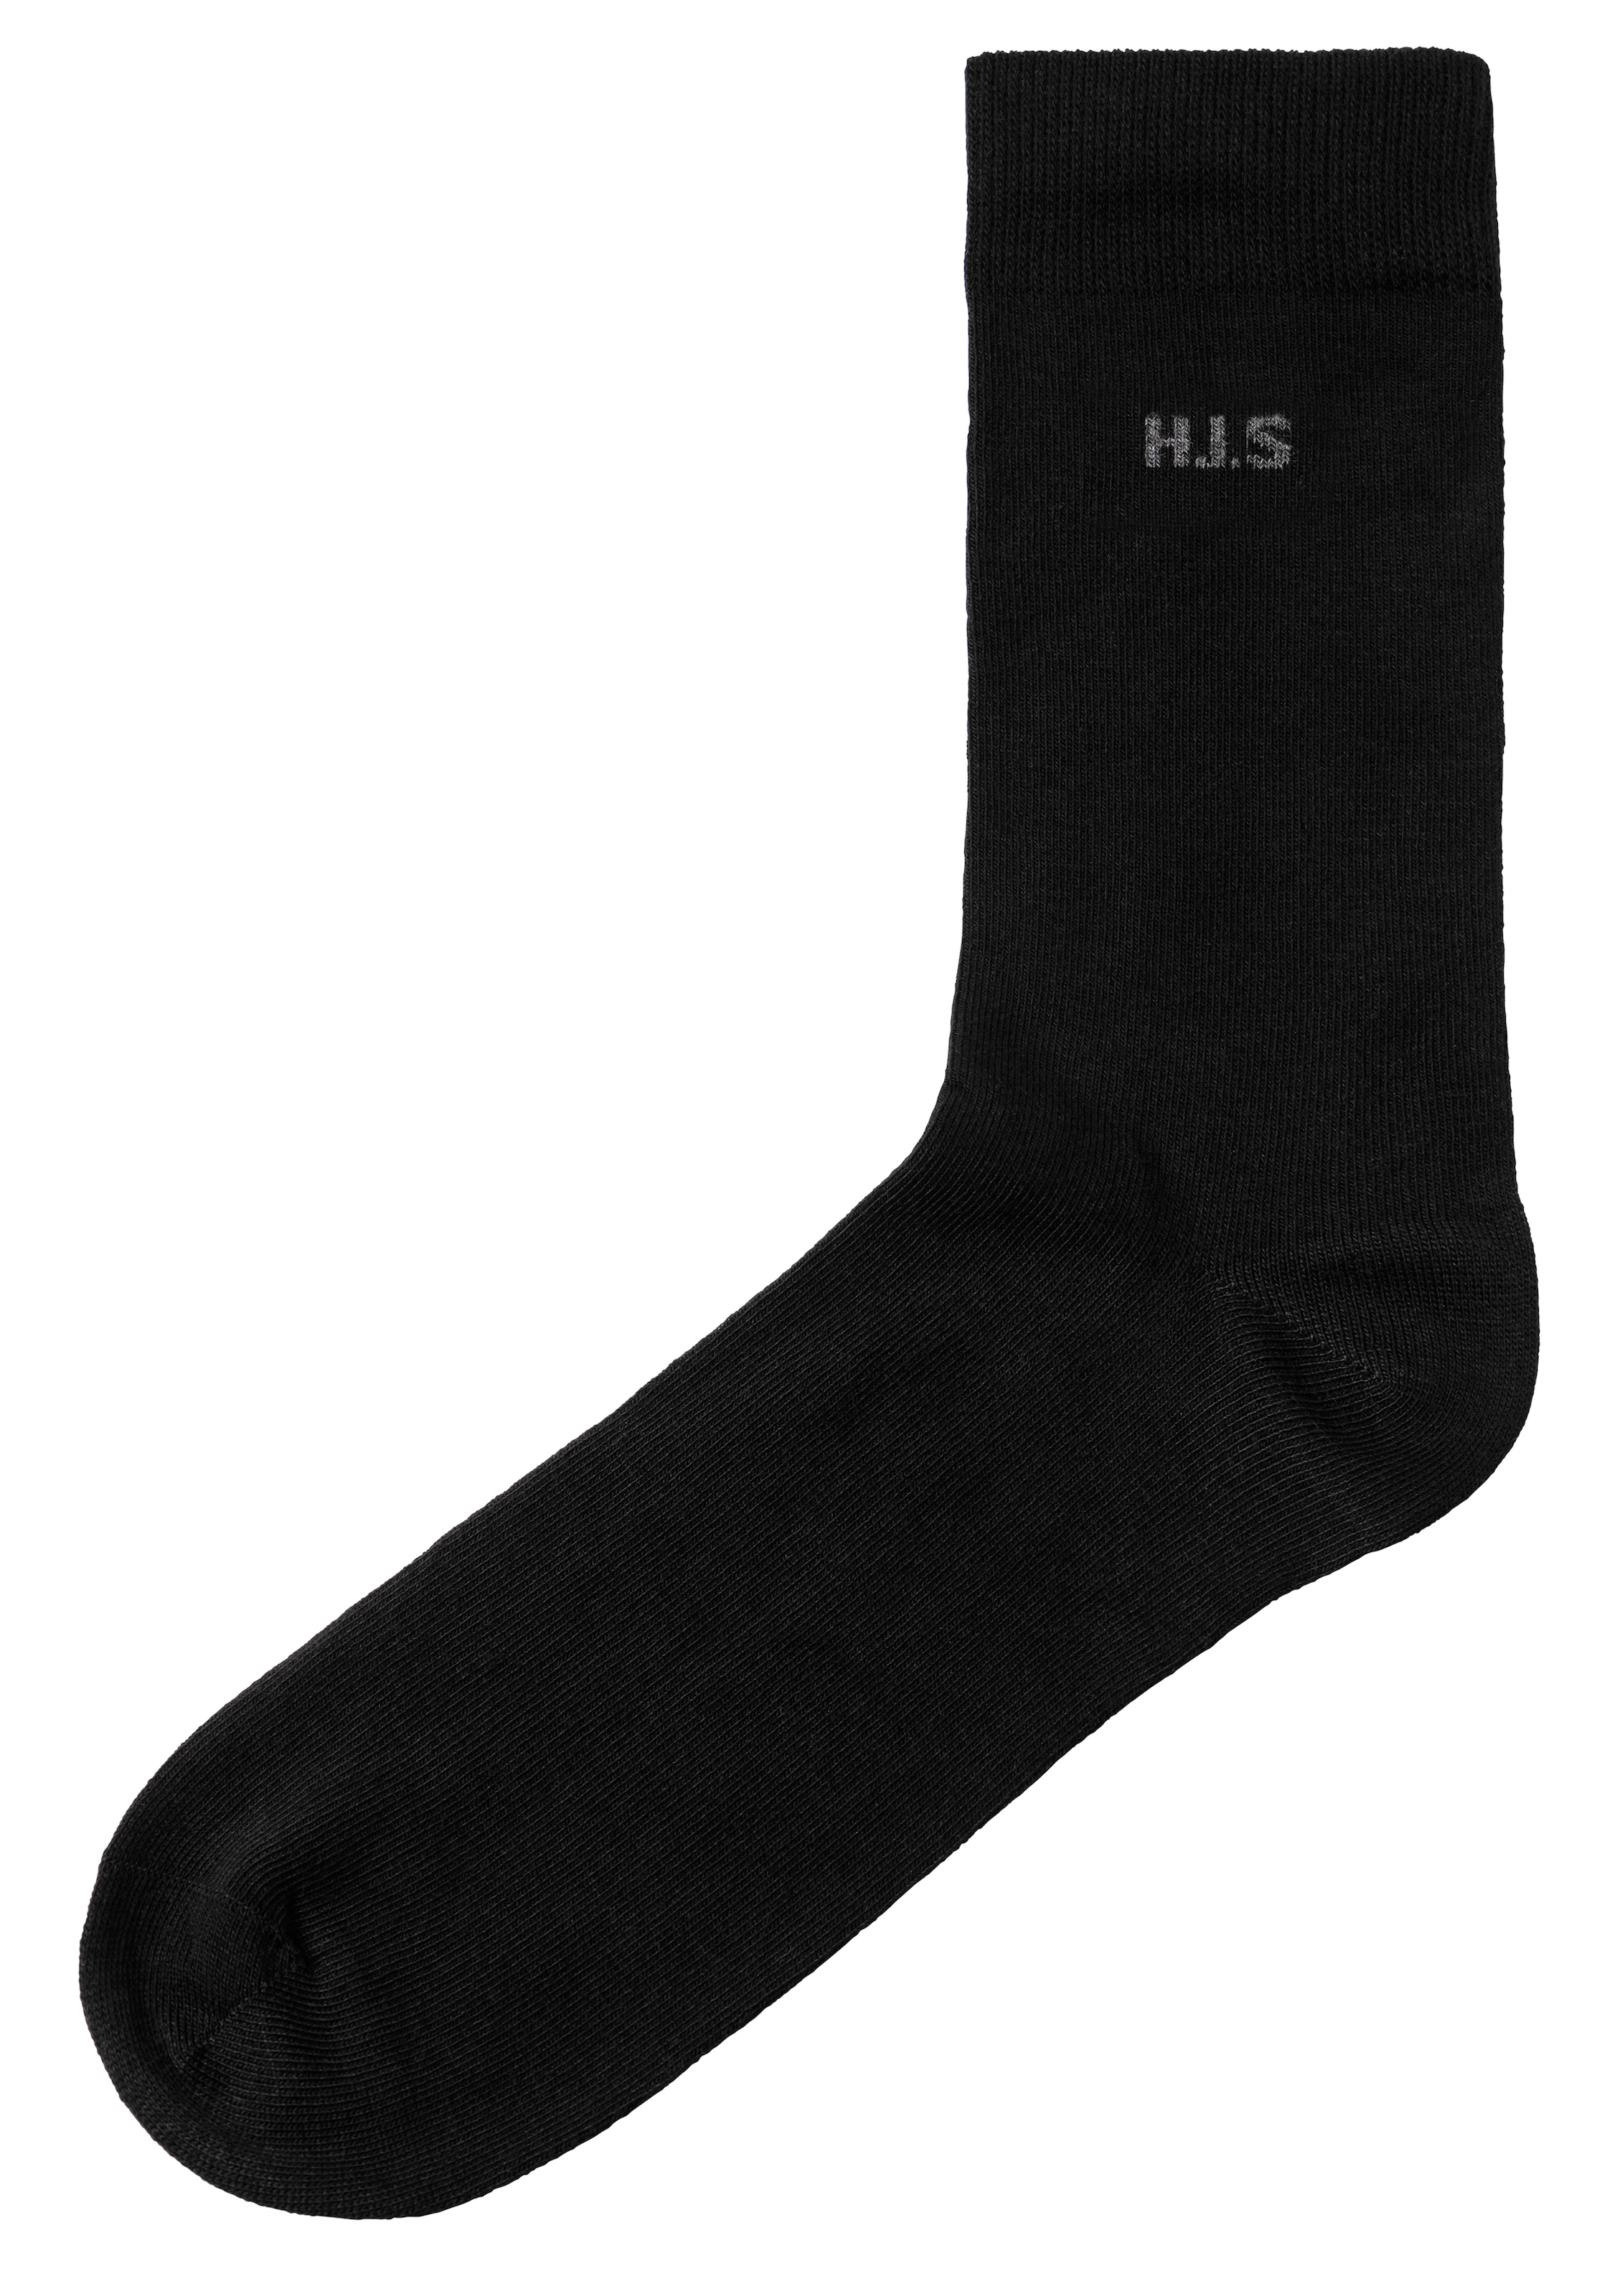 ➤ Strümpfe & Socken ohne Mindestbestellwert - bestellen versandkostenfrei